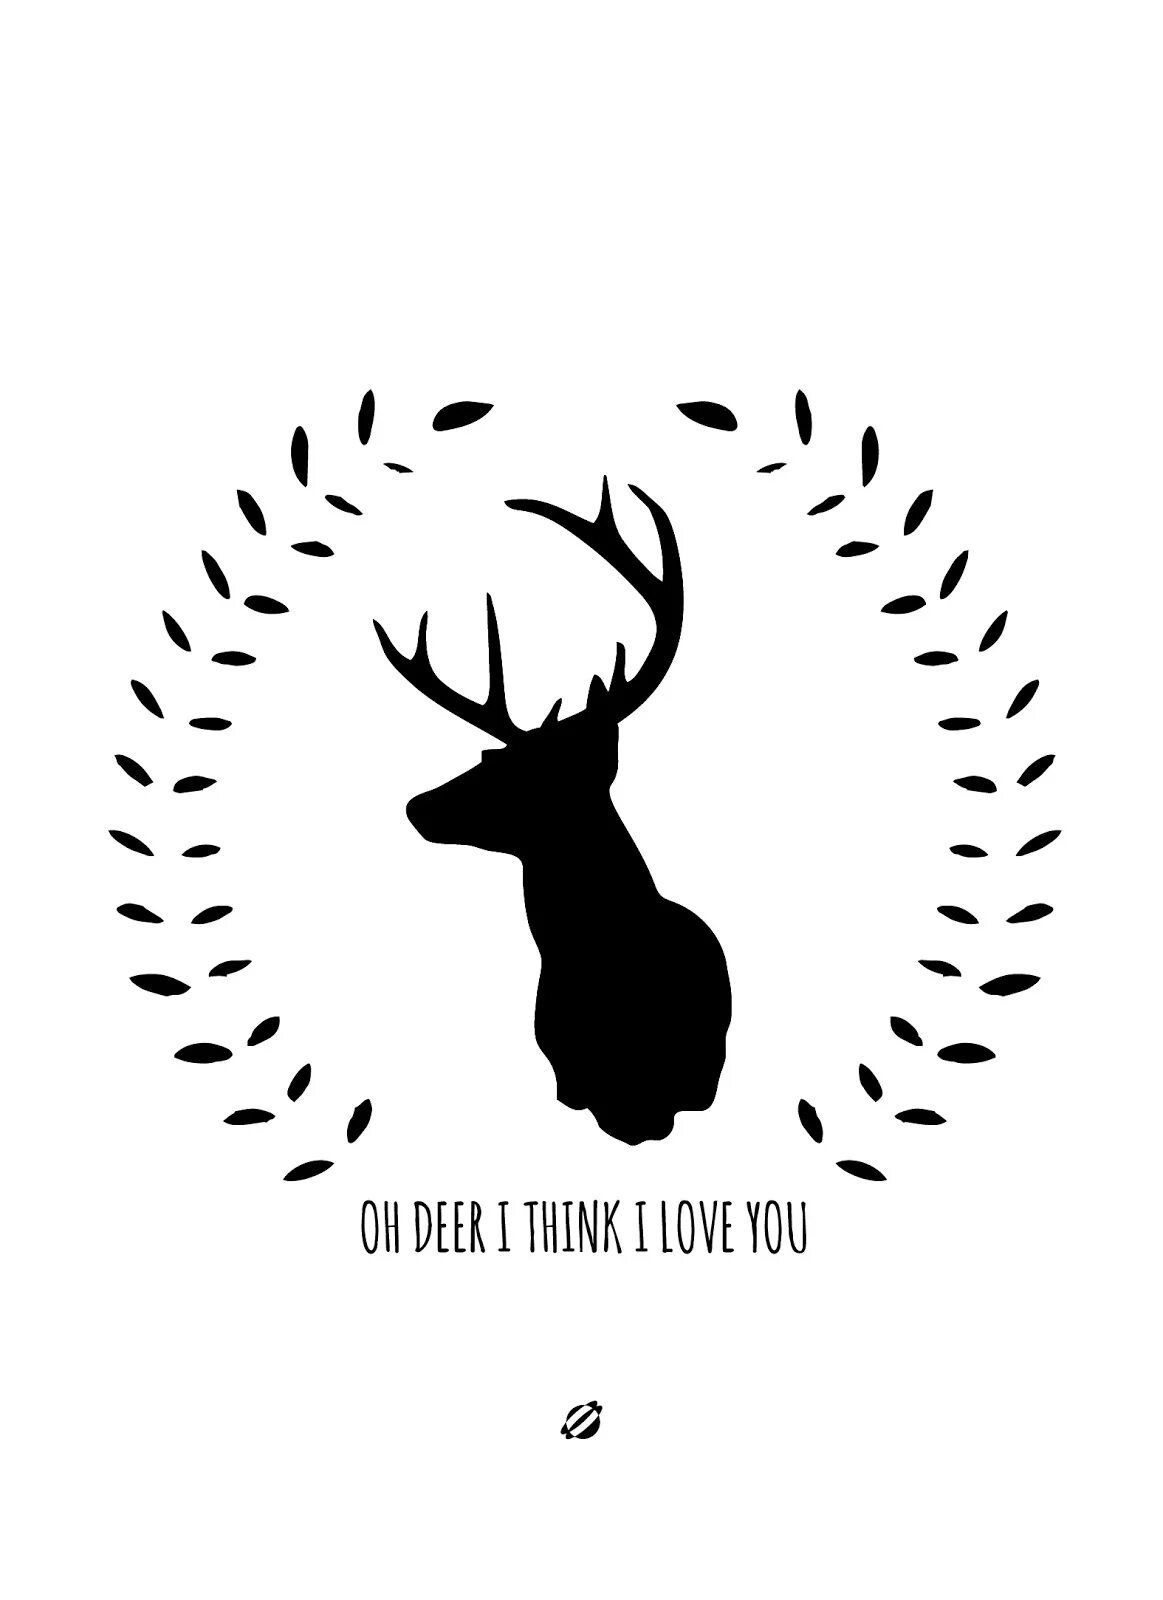 Deer перевод. Валентинка с оленем.